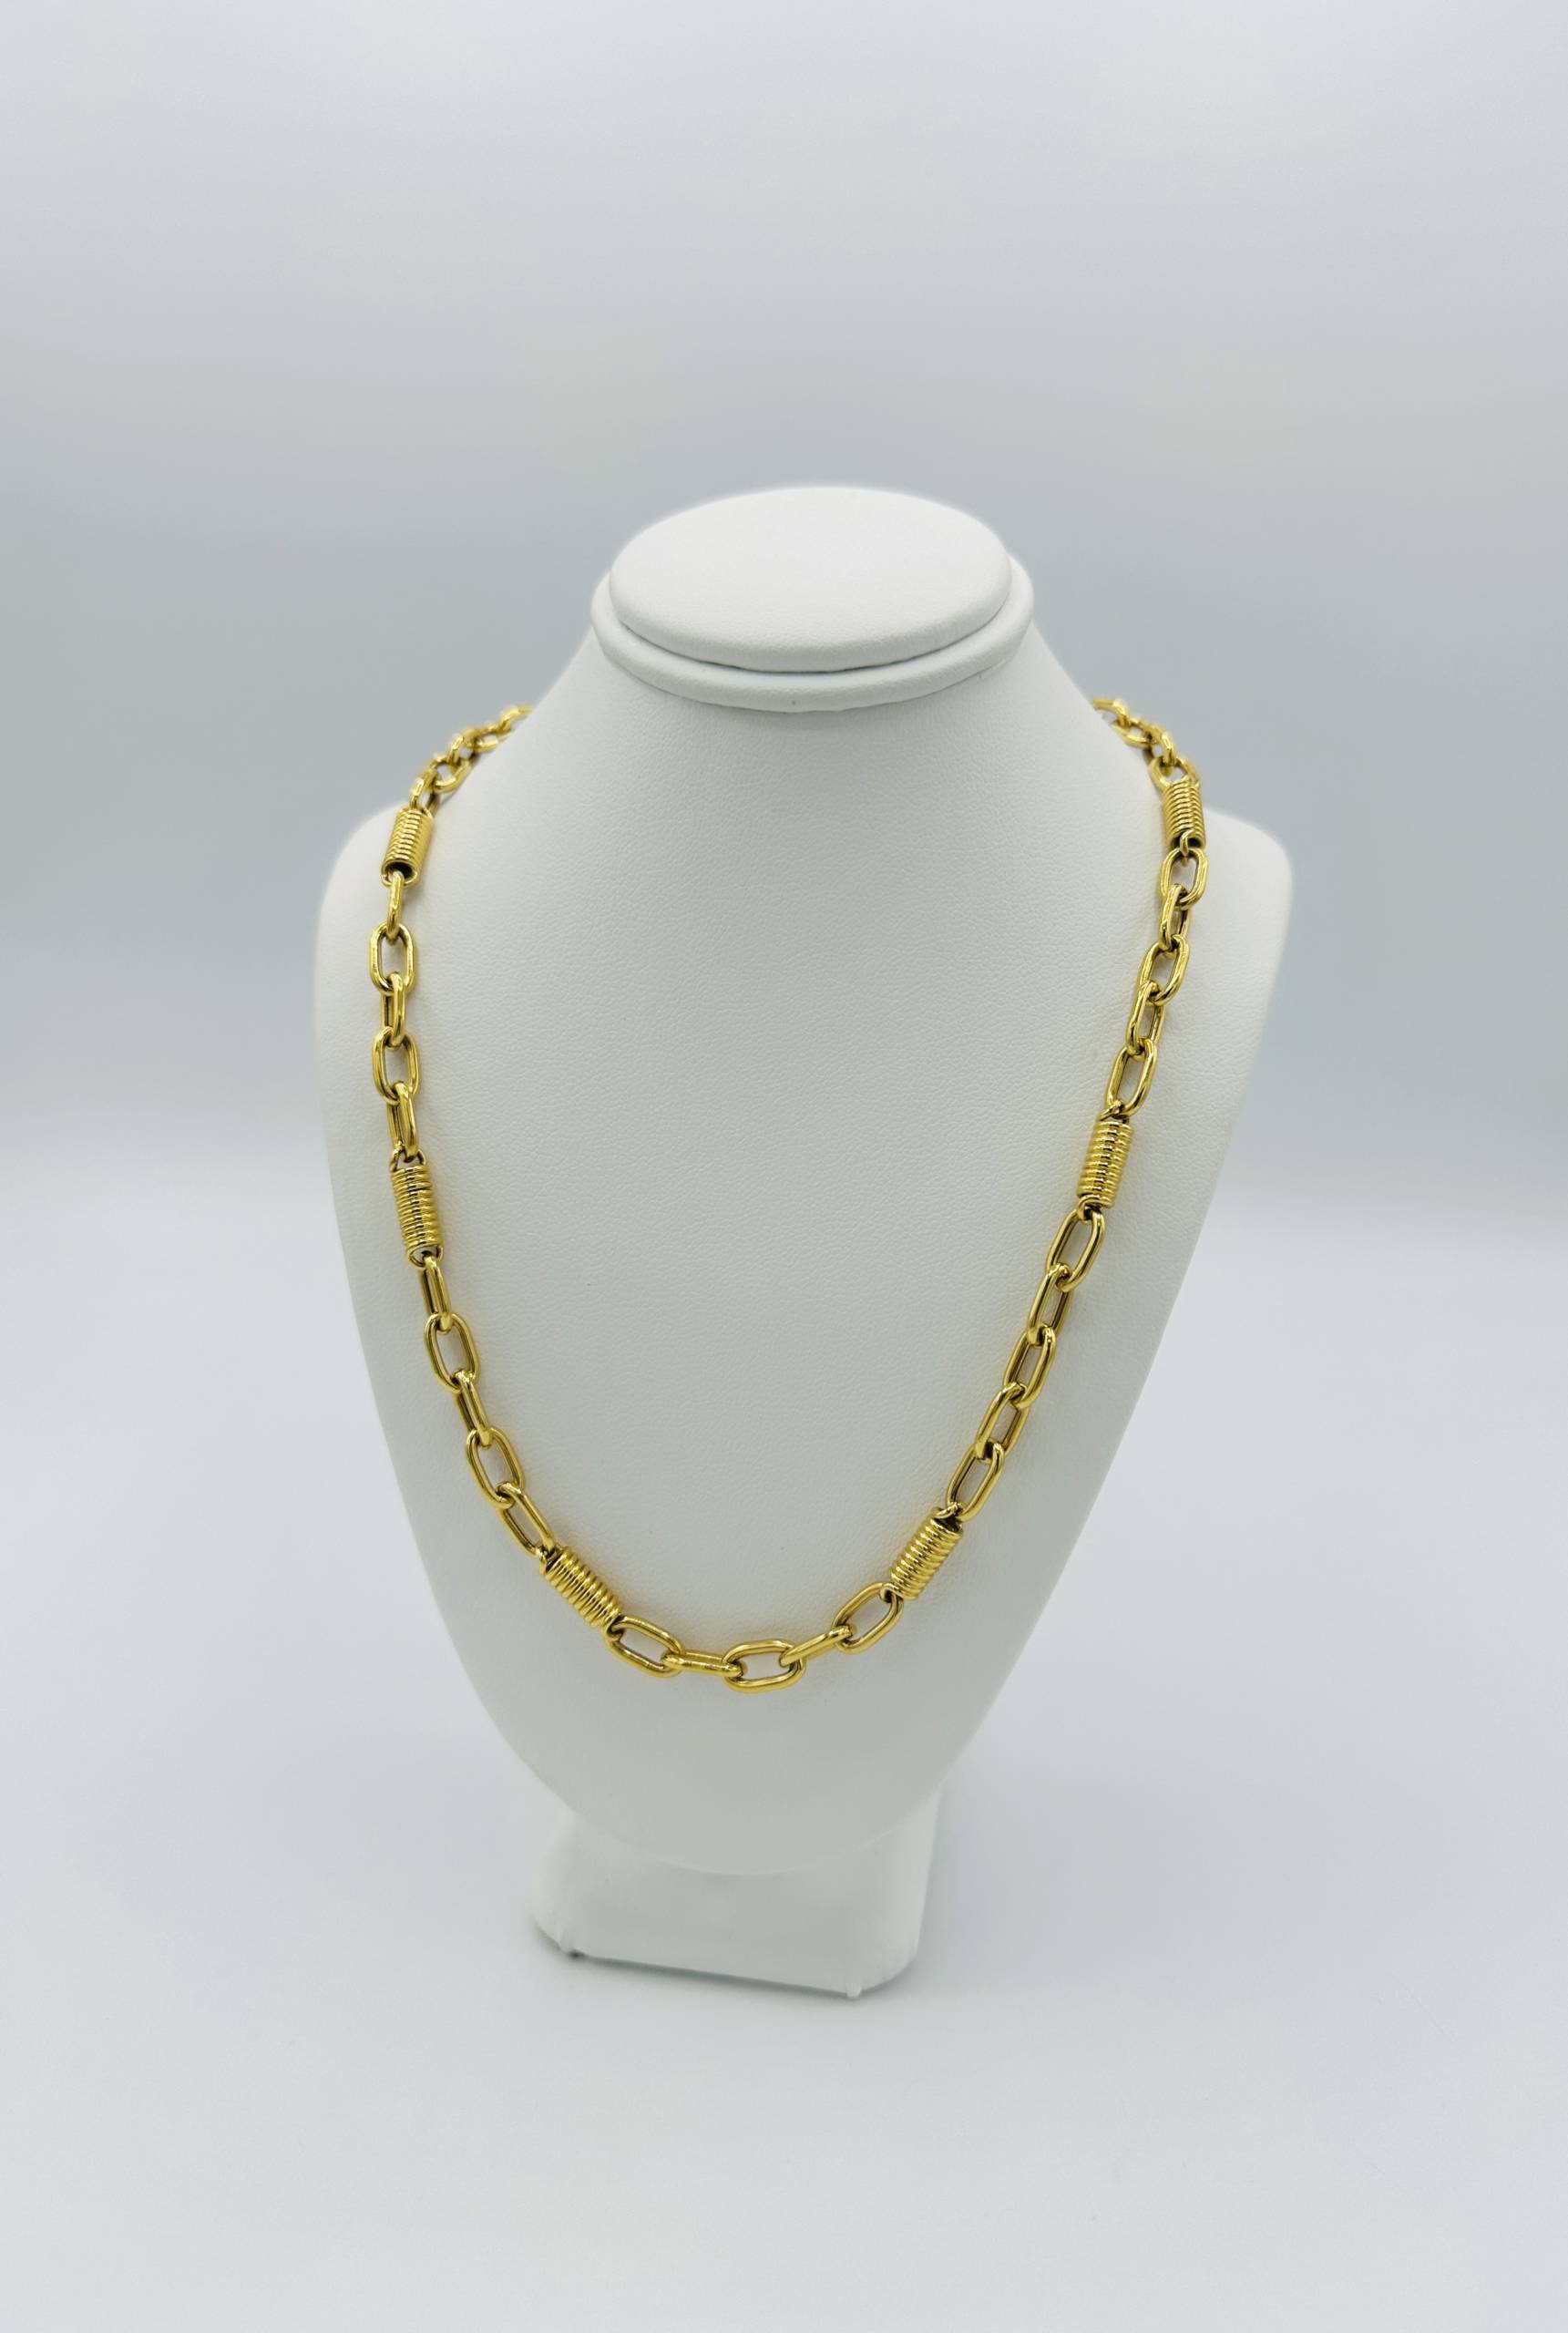 Chain - Kishek Jewelers